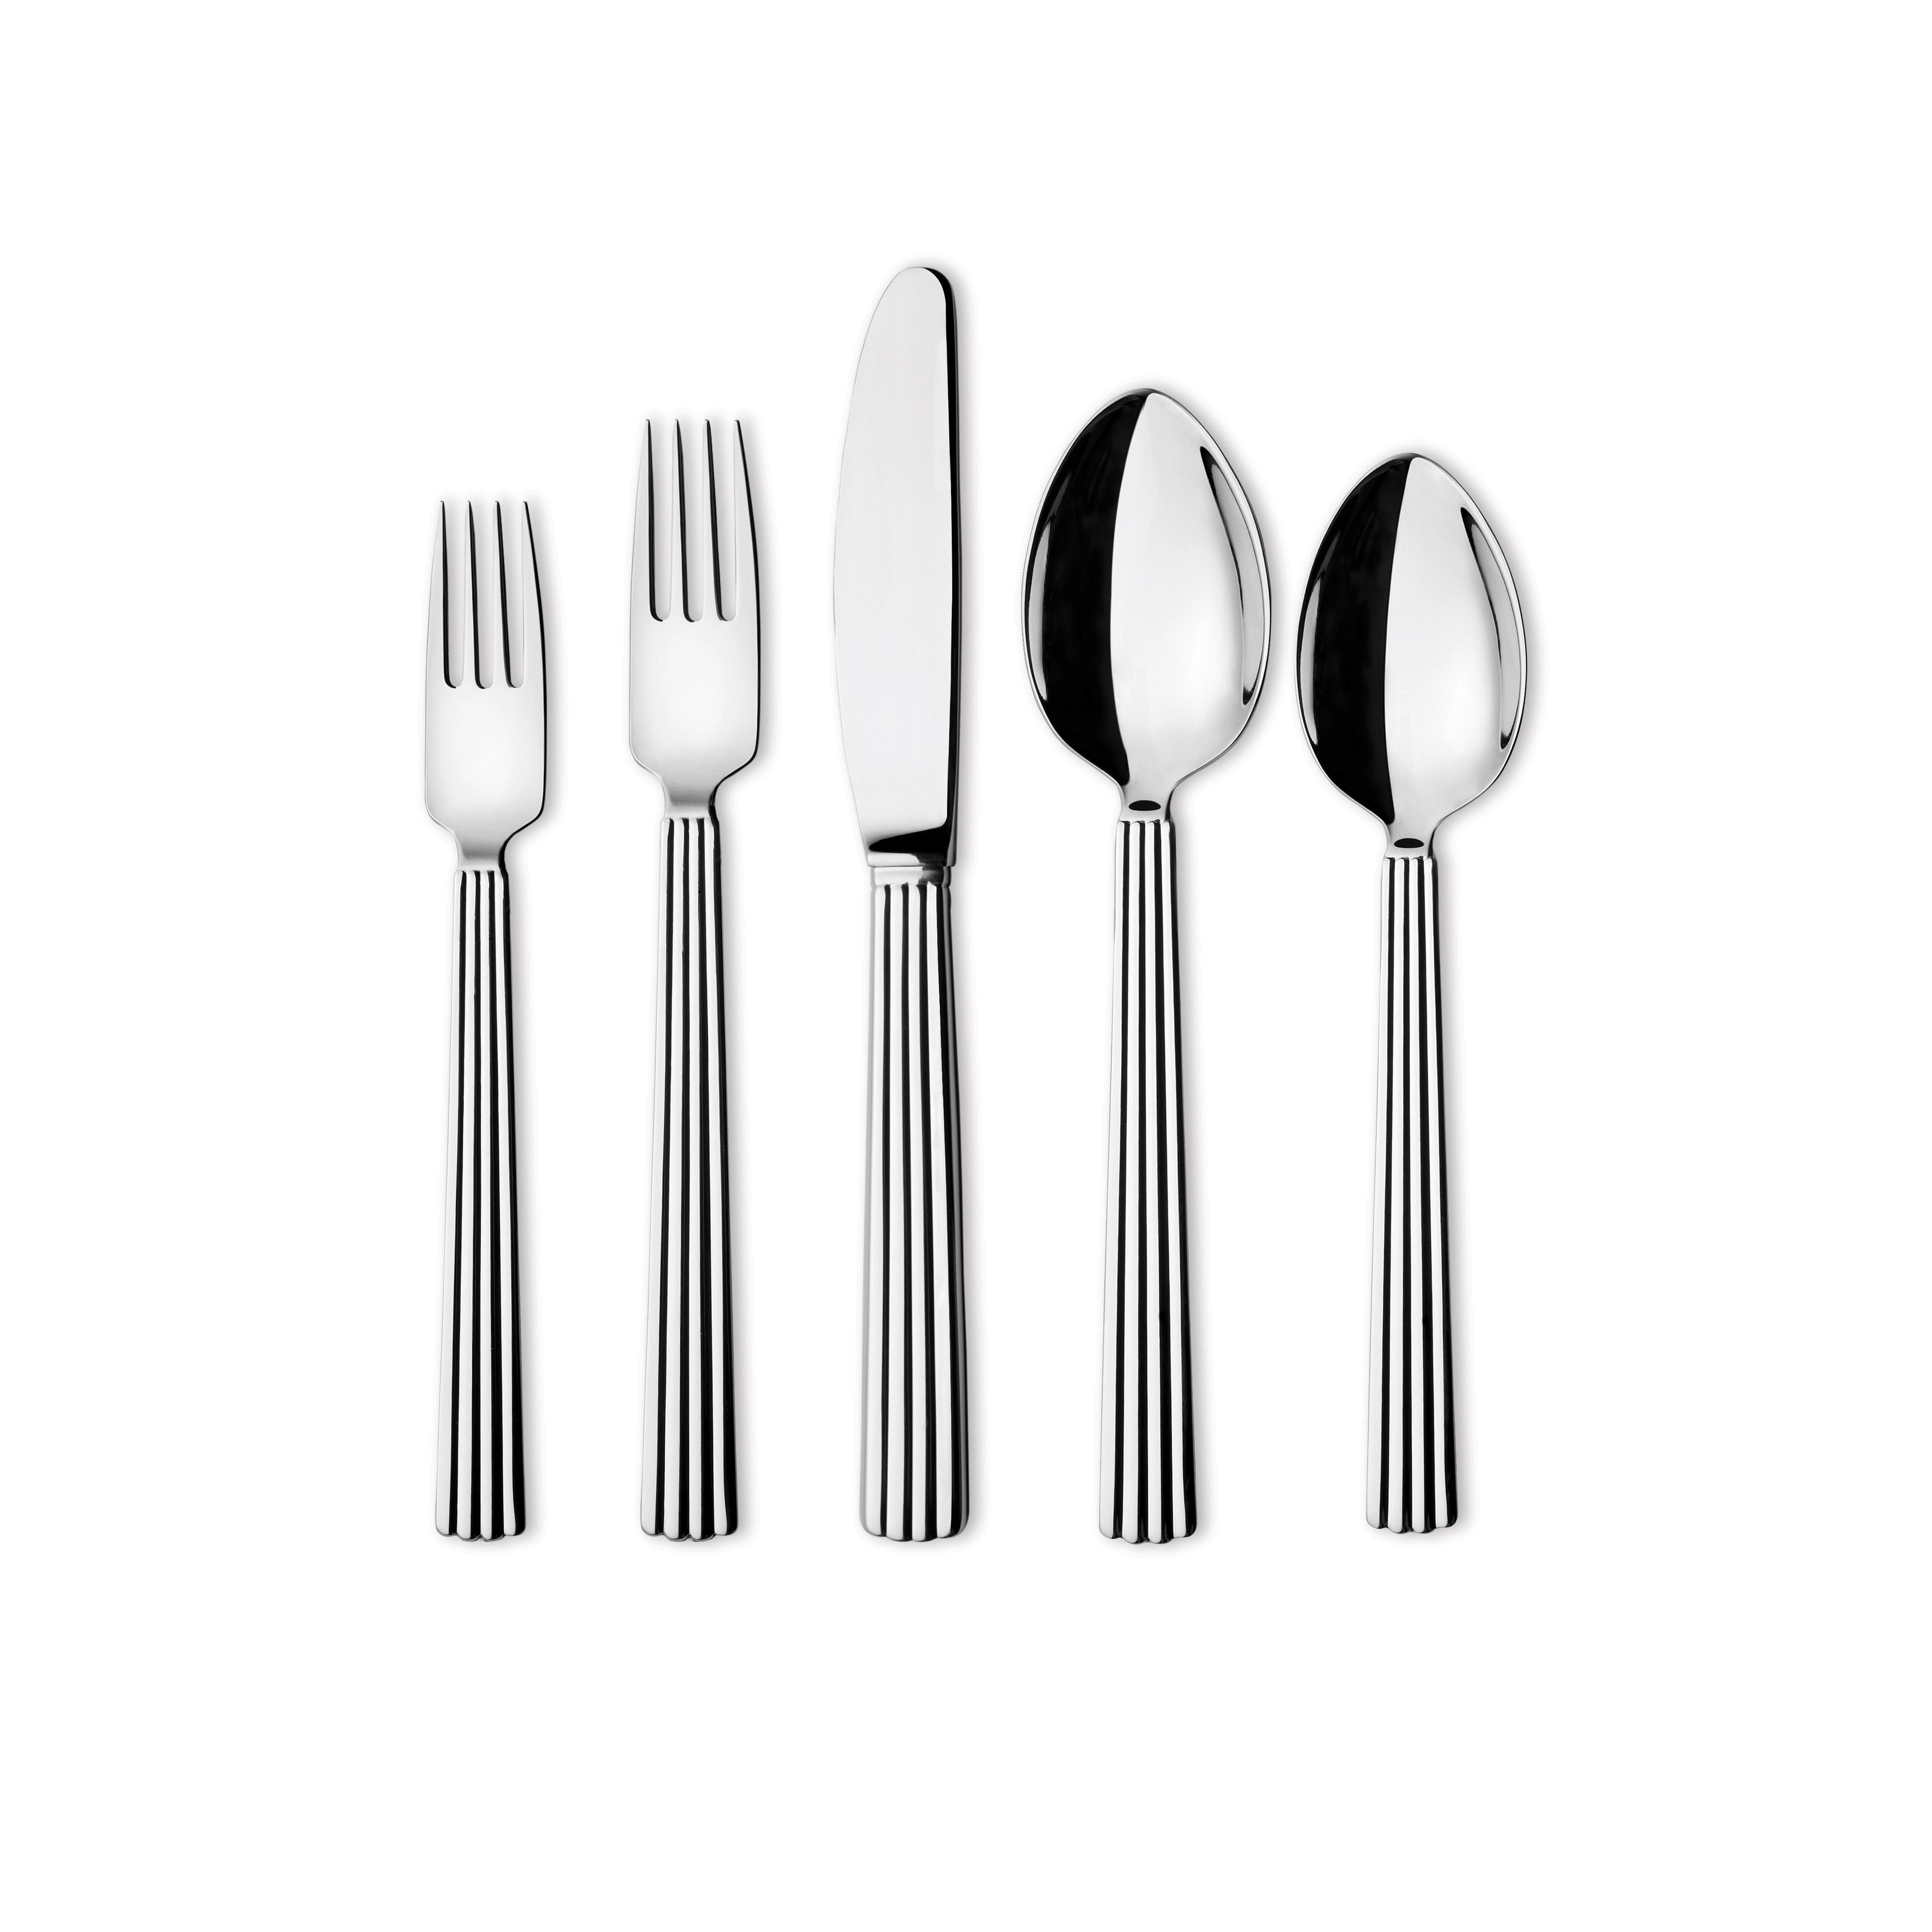 Modern Georg Jensen 5-Piece Cutlery Set in Stainless Steel by Sigvard Bernadotte